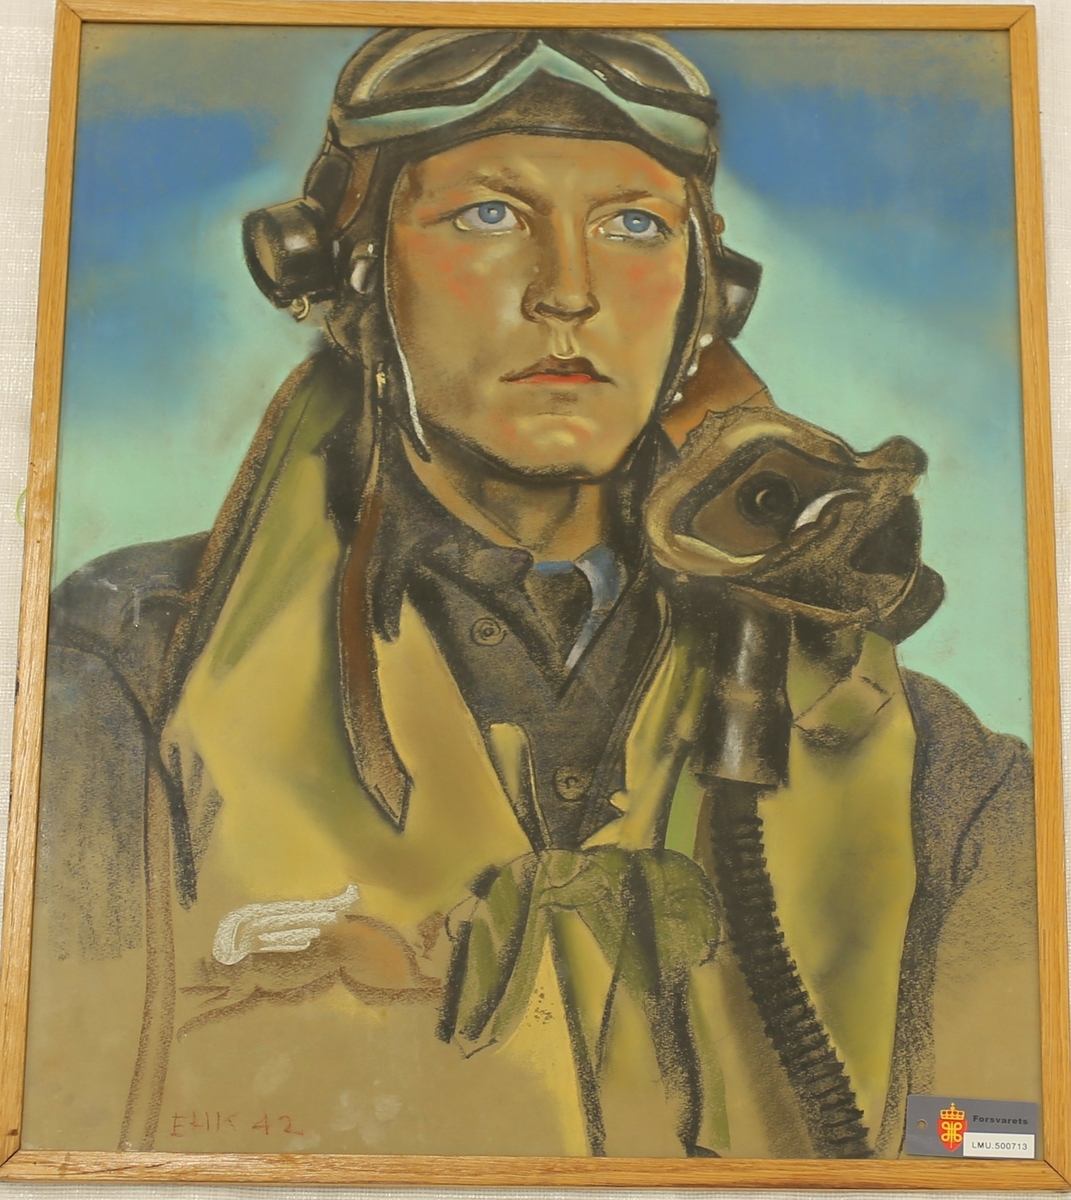 Maleri av pilot under 2. verdenskrig. På baksiden er det festet en skadet konvolutt sendt fra England til "AIR FORCE OSLO NORWAY". Konvolutten er senere stemplet "LUFTFORSVARET OVERKOMMANDOEN".